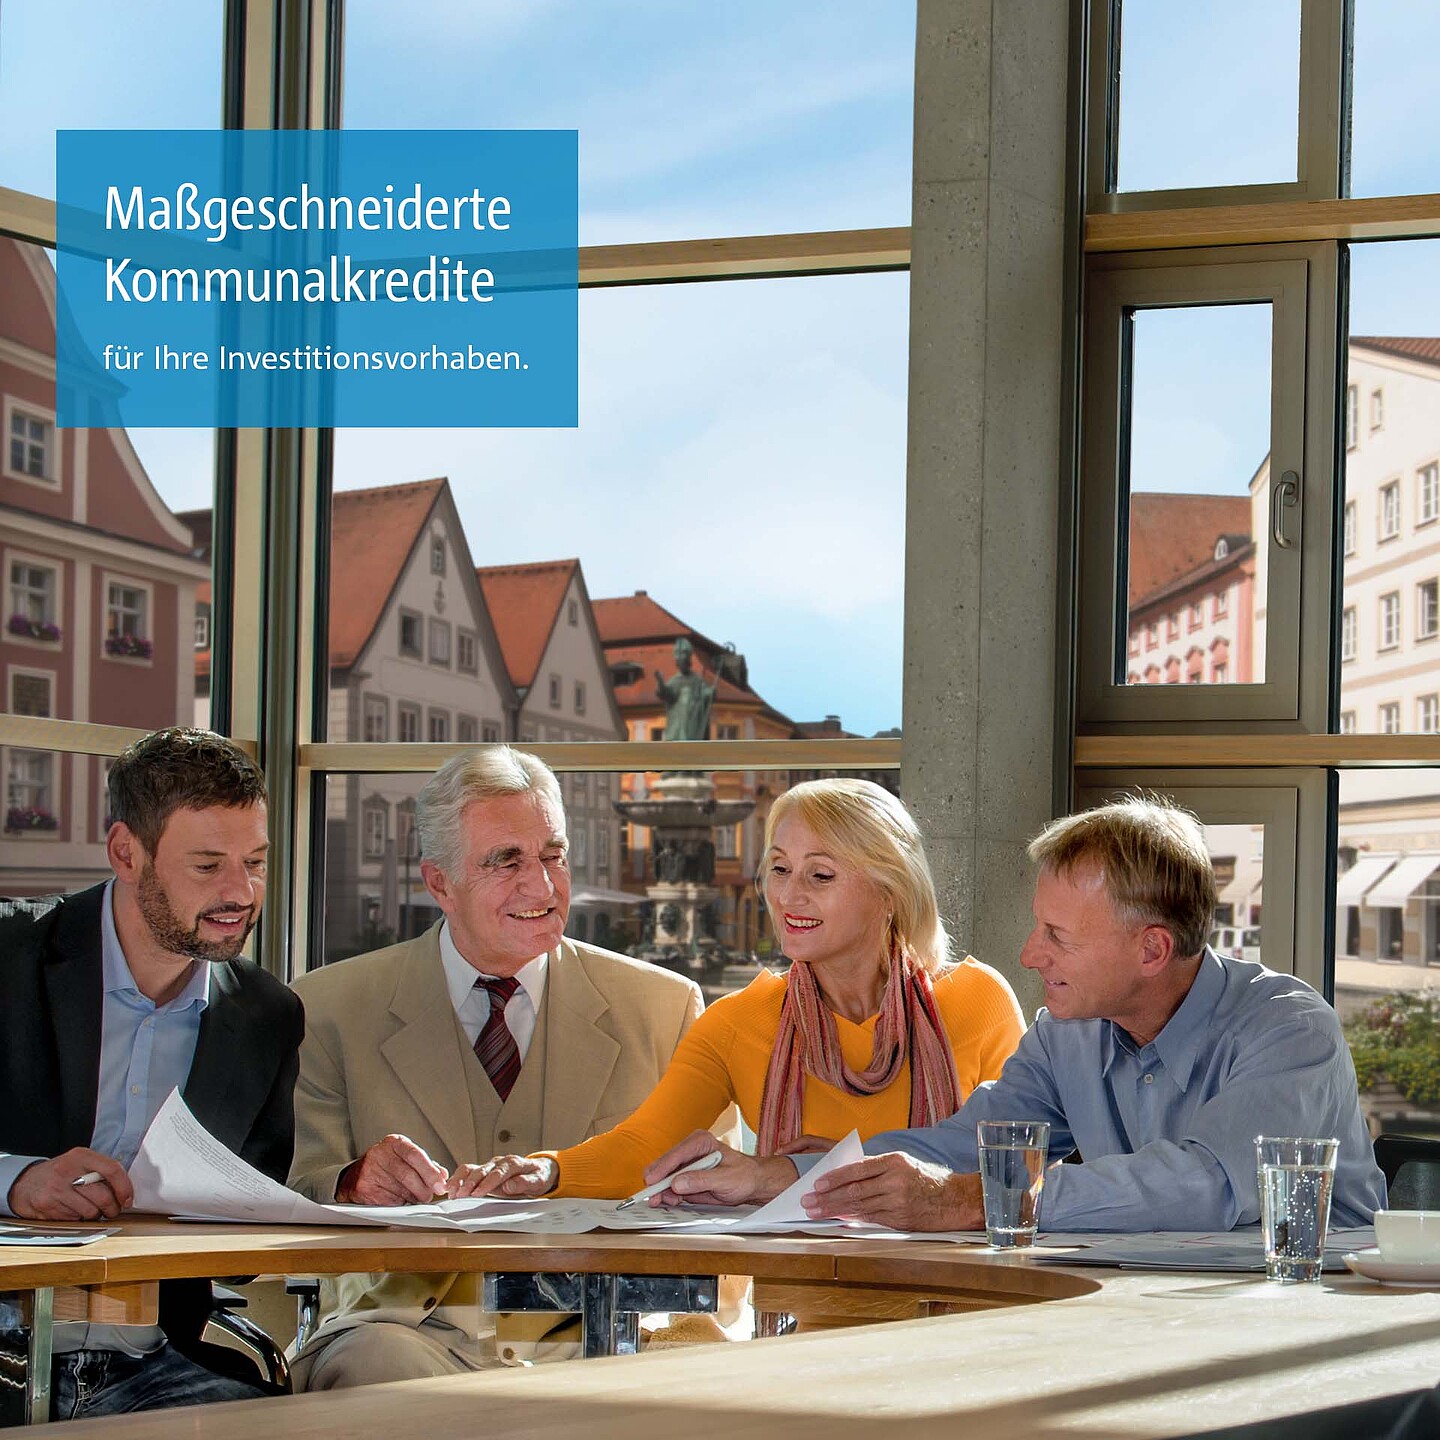 Kommunalkunden der BayernLabo beraten sich in Konferenzraum zu Kommunalkrediten.